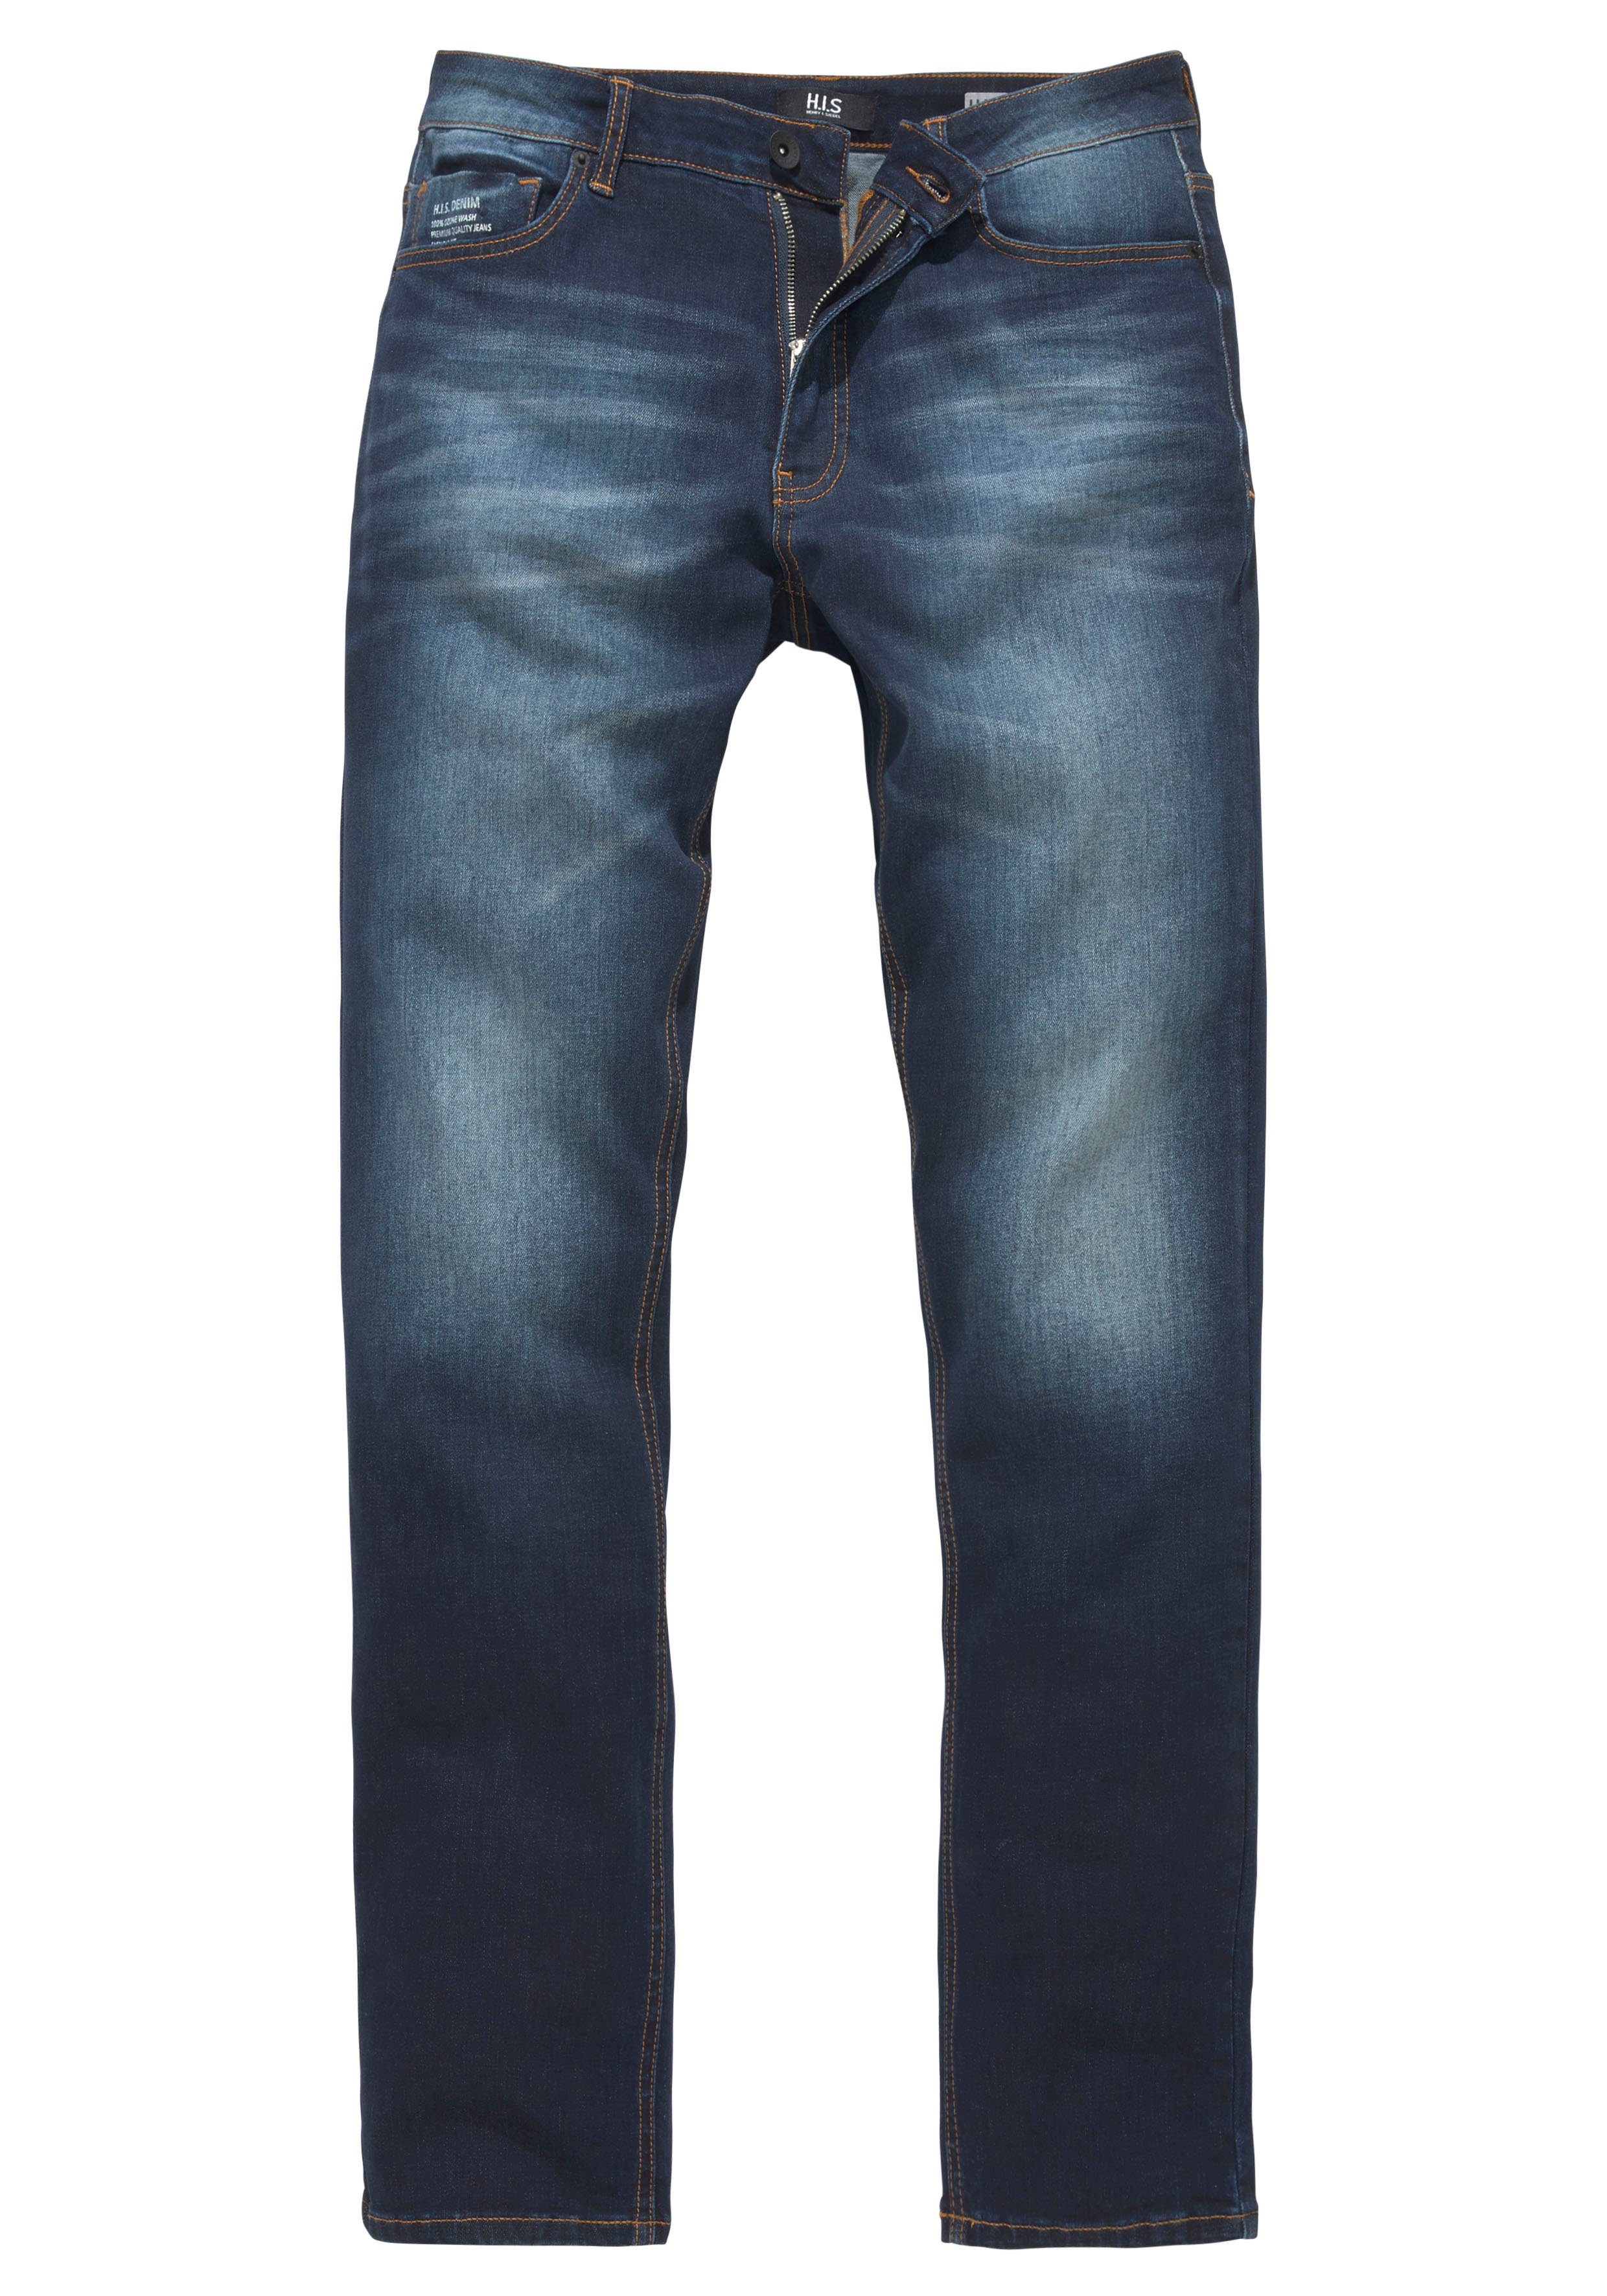 H.I.S Straight-Jeans Ozon darkblue-used Wash DIX Ökologische, wassersparende Produktion durch